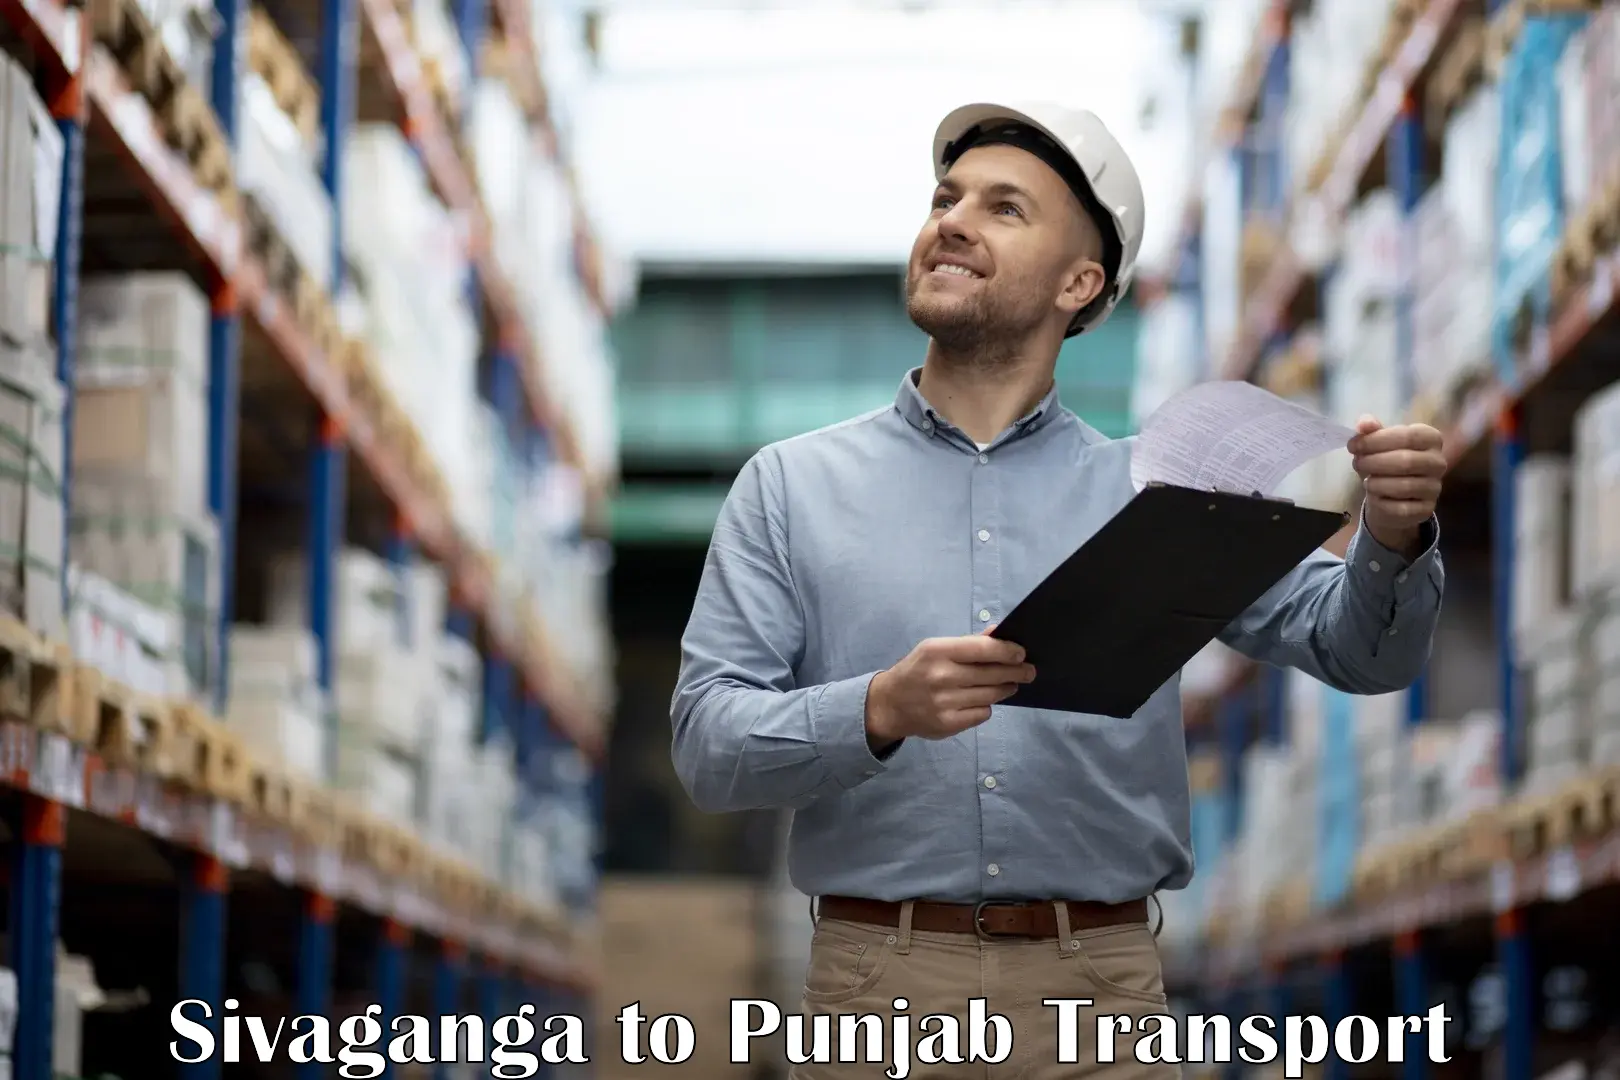 Shipping partner Sivaganga to Pathankot